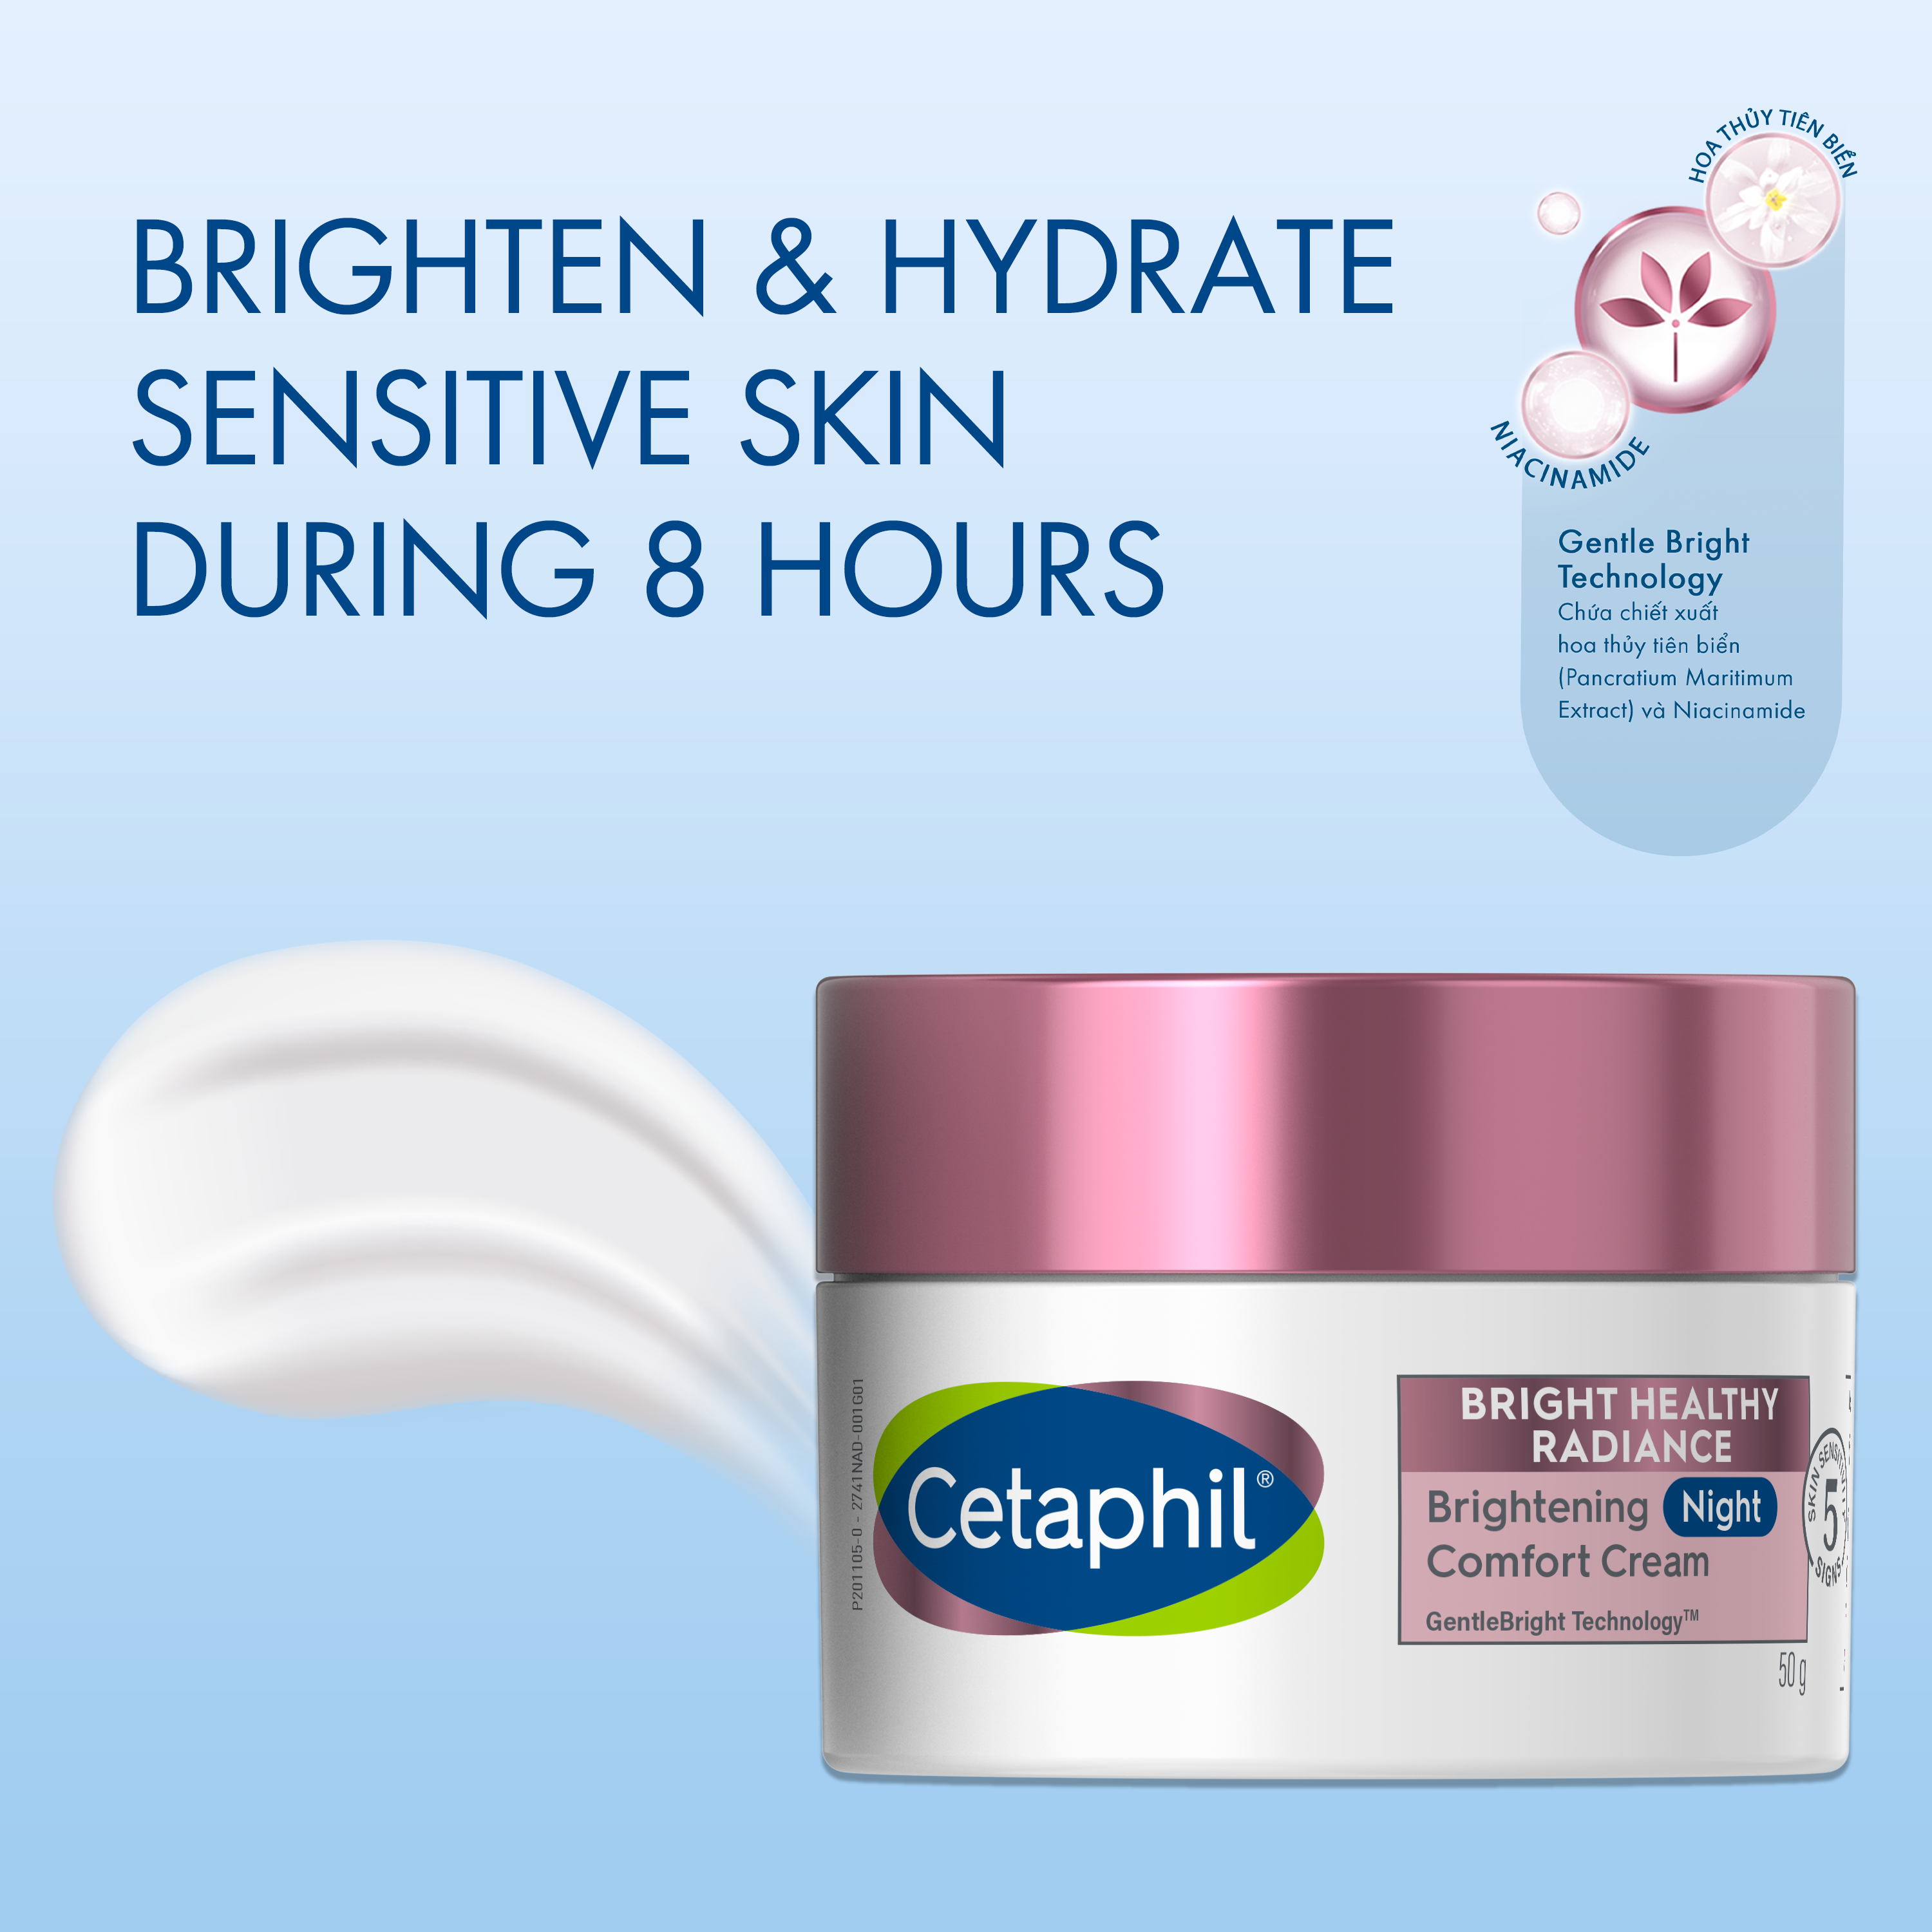 Cetaphil Bright Healthy Radiance Brightening Night Comfort Cream Ingredients